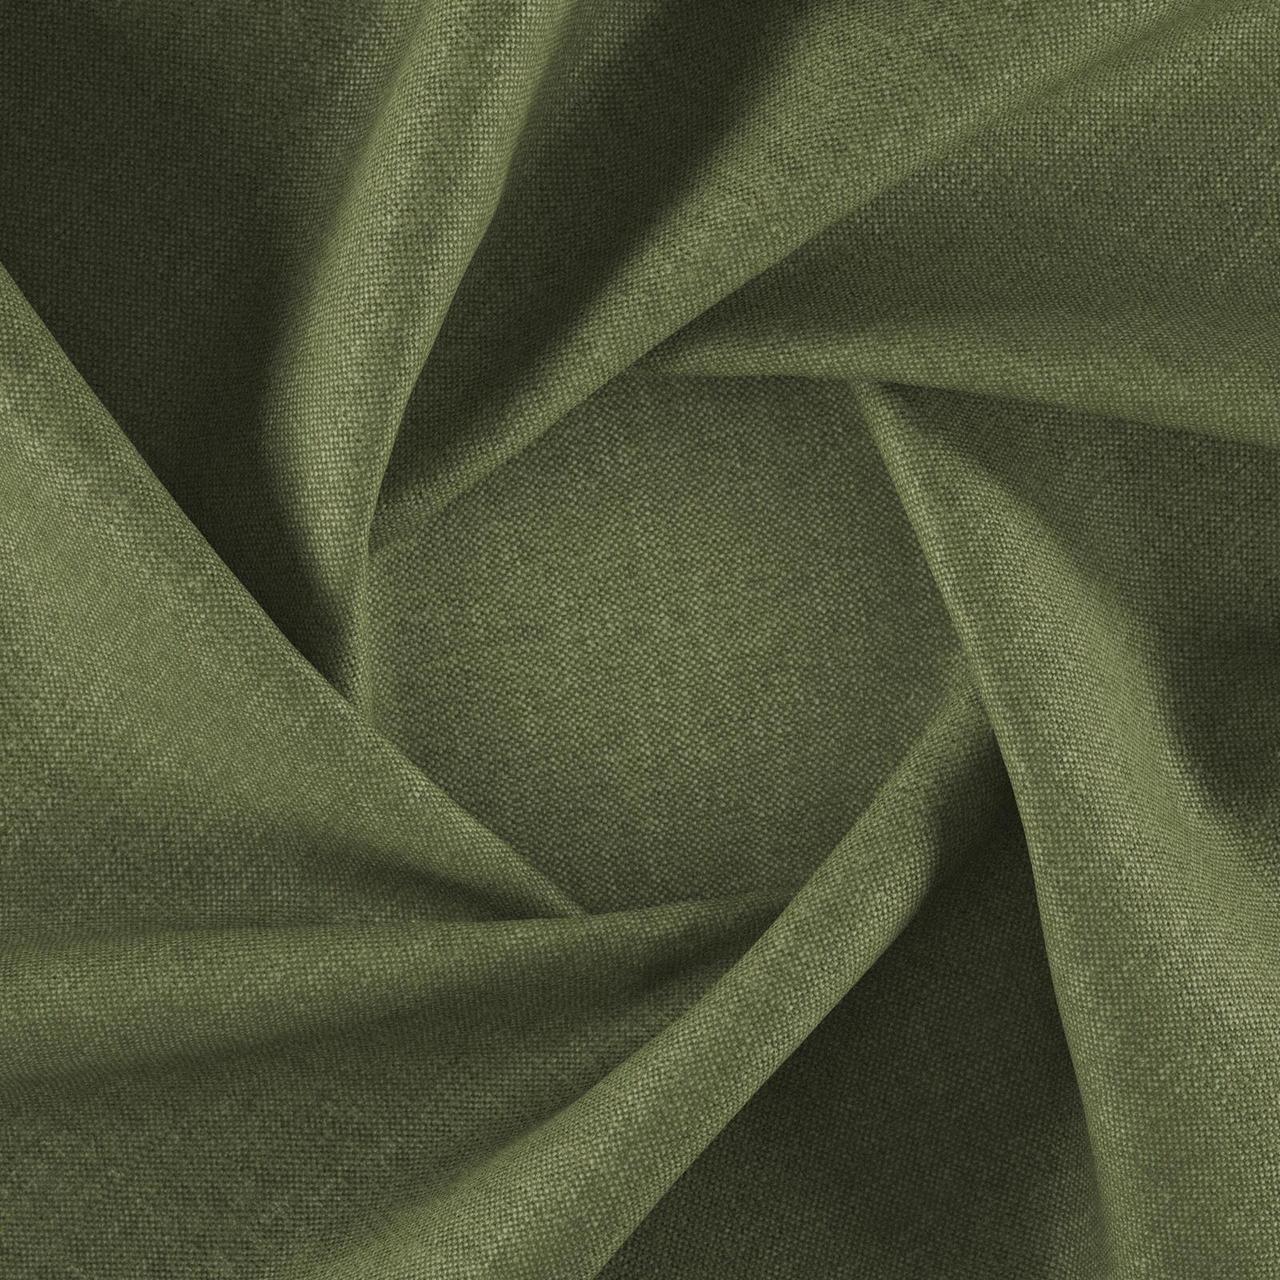 Тканина для перетяжки м'яких меблів шеніл Перфекто (Perfecto) світло-зеленого кольору